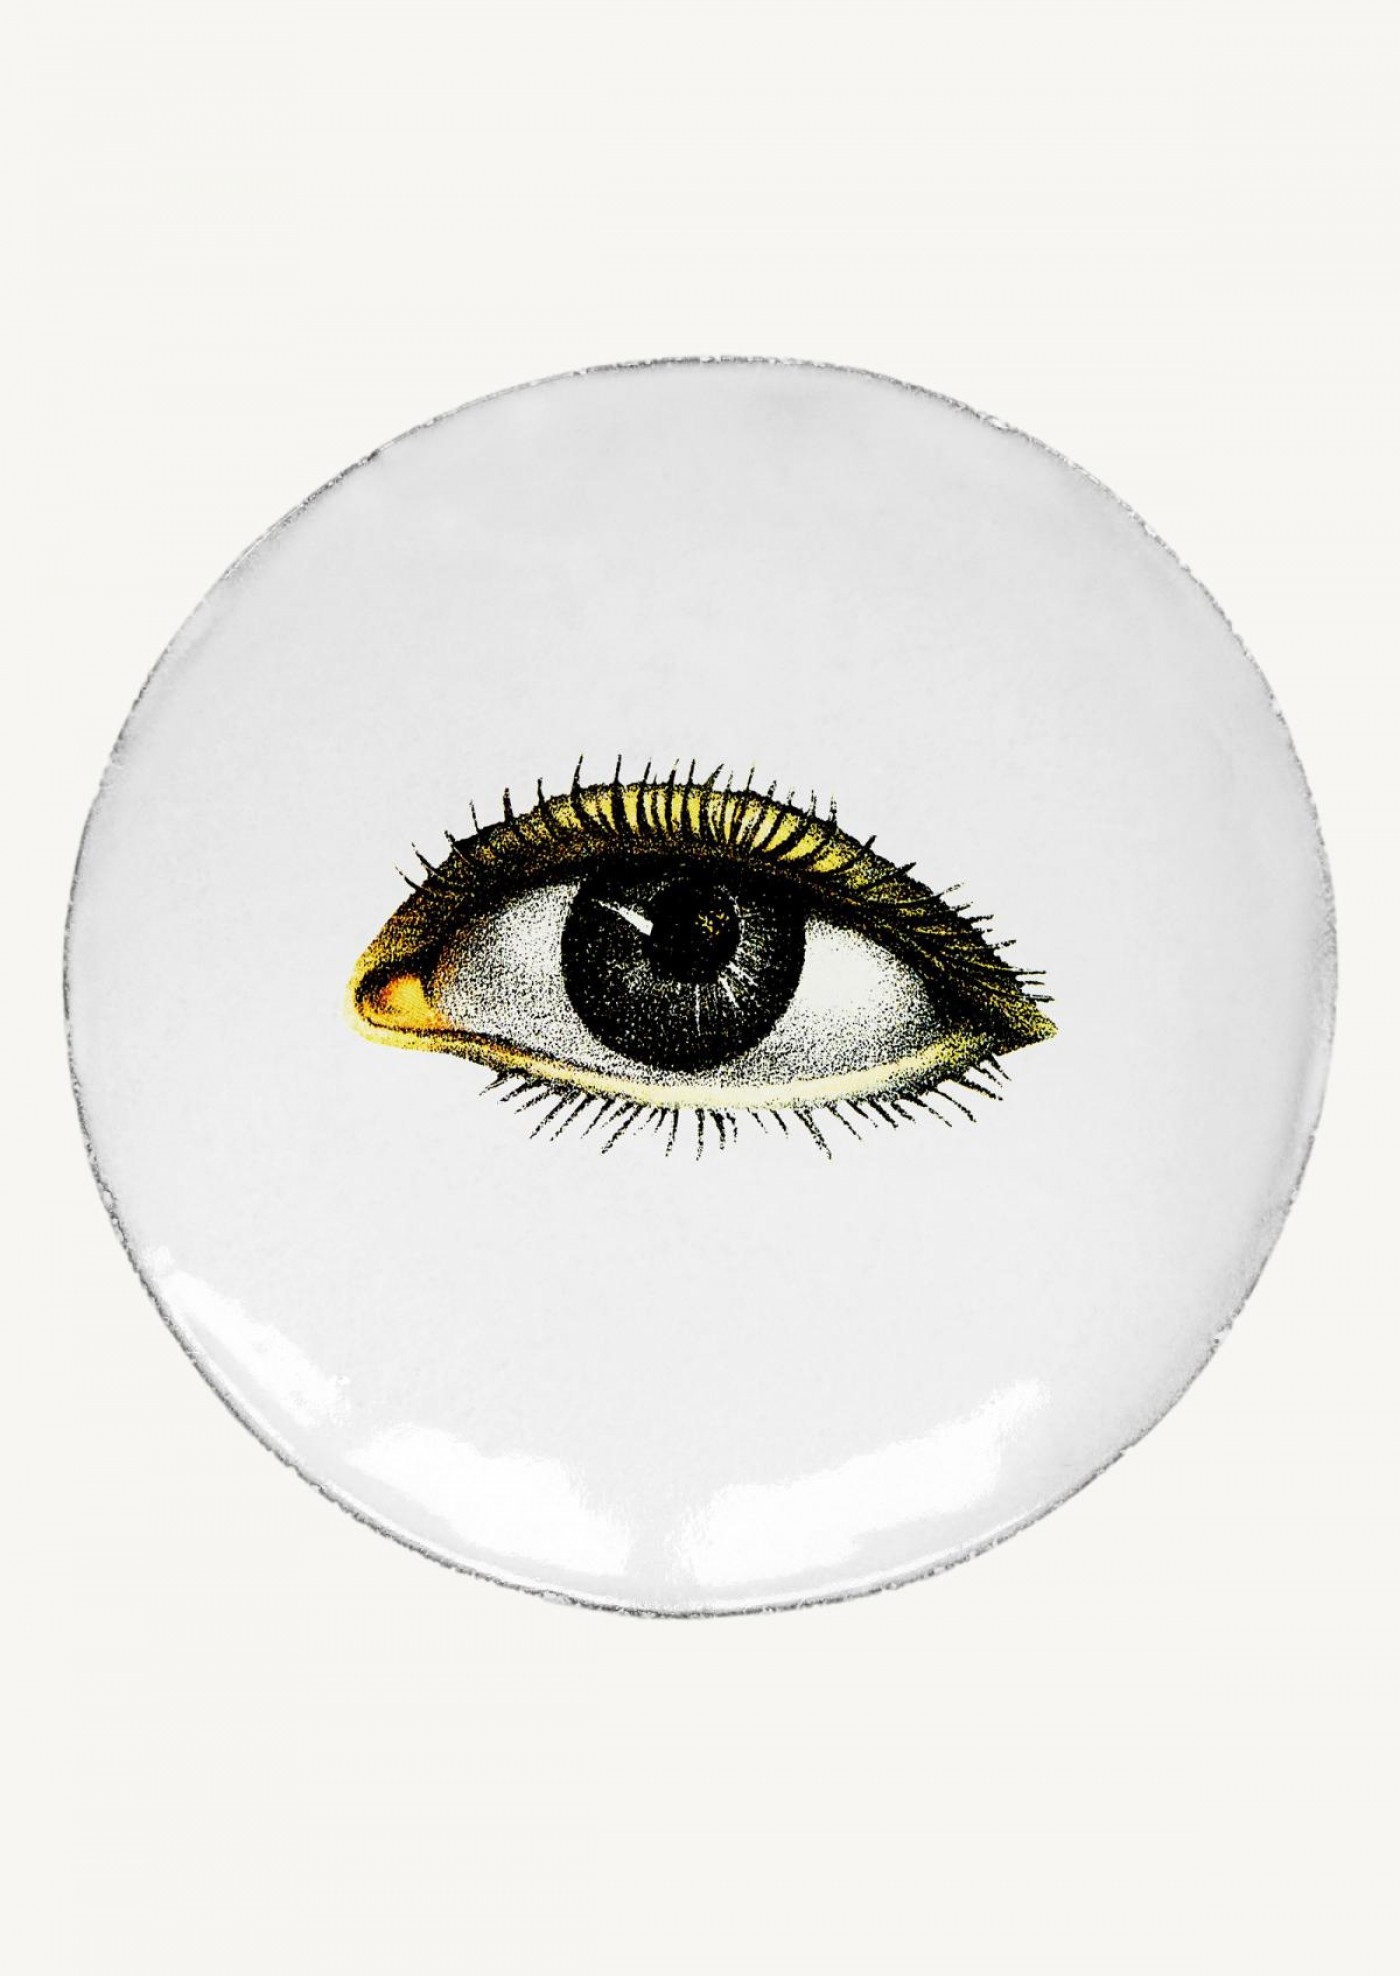 Left eye saucer